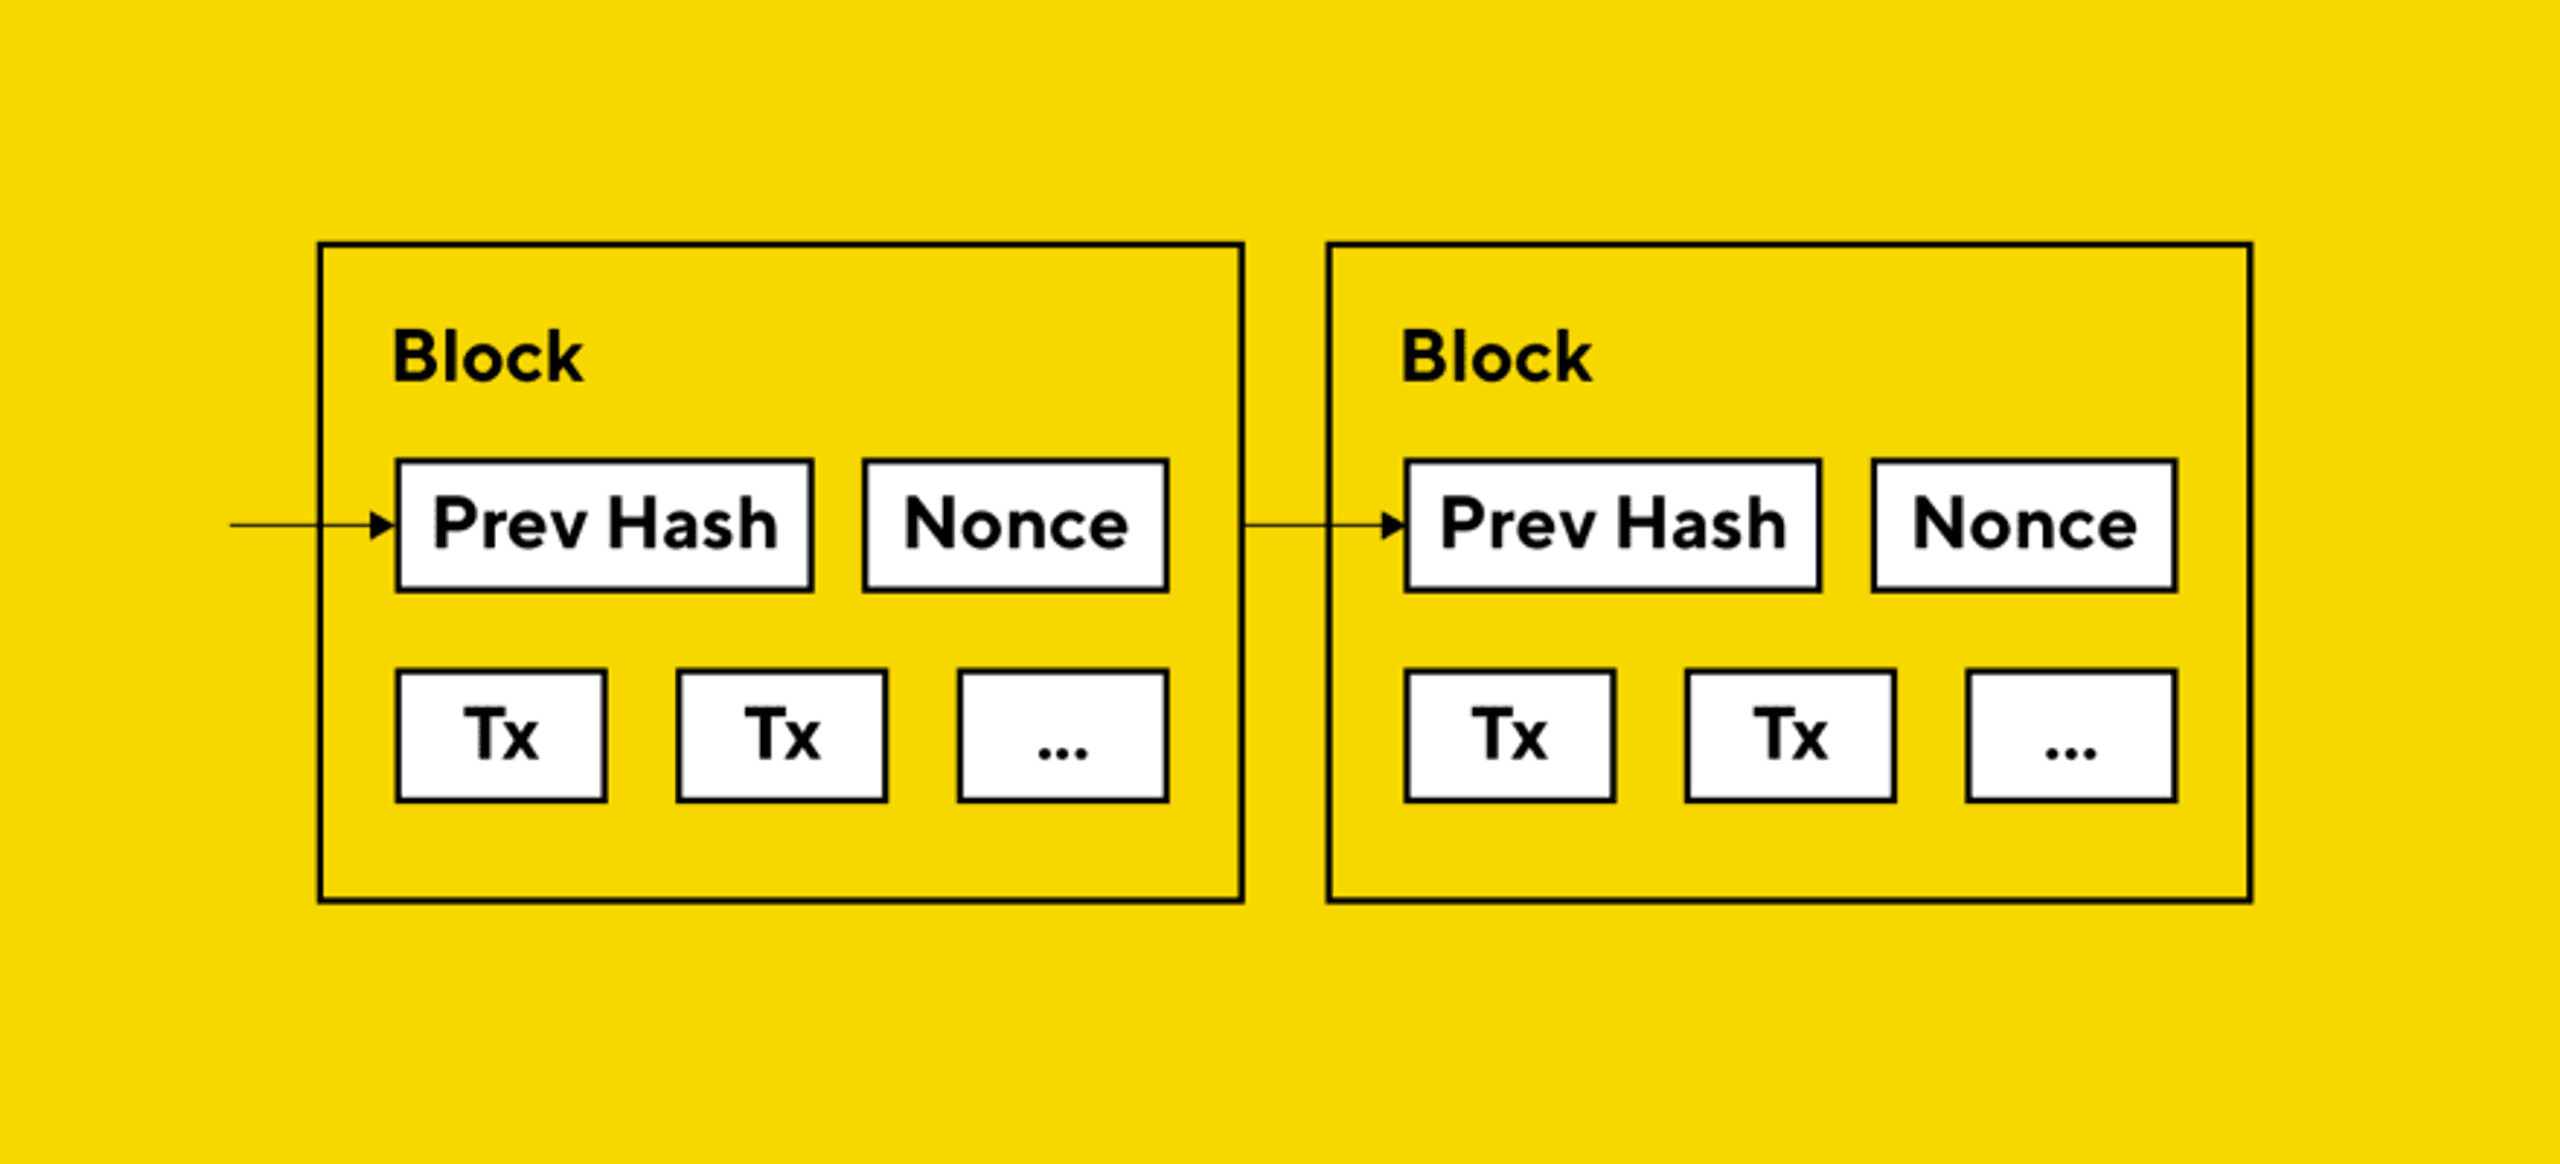 blockspace là gì